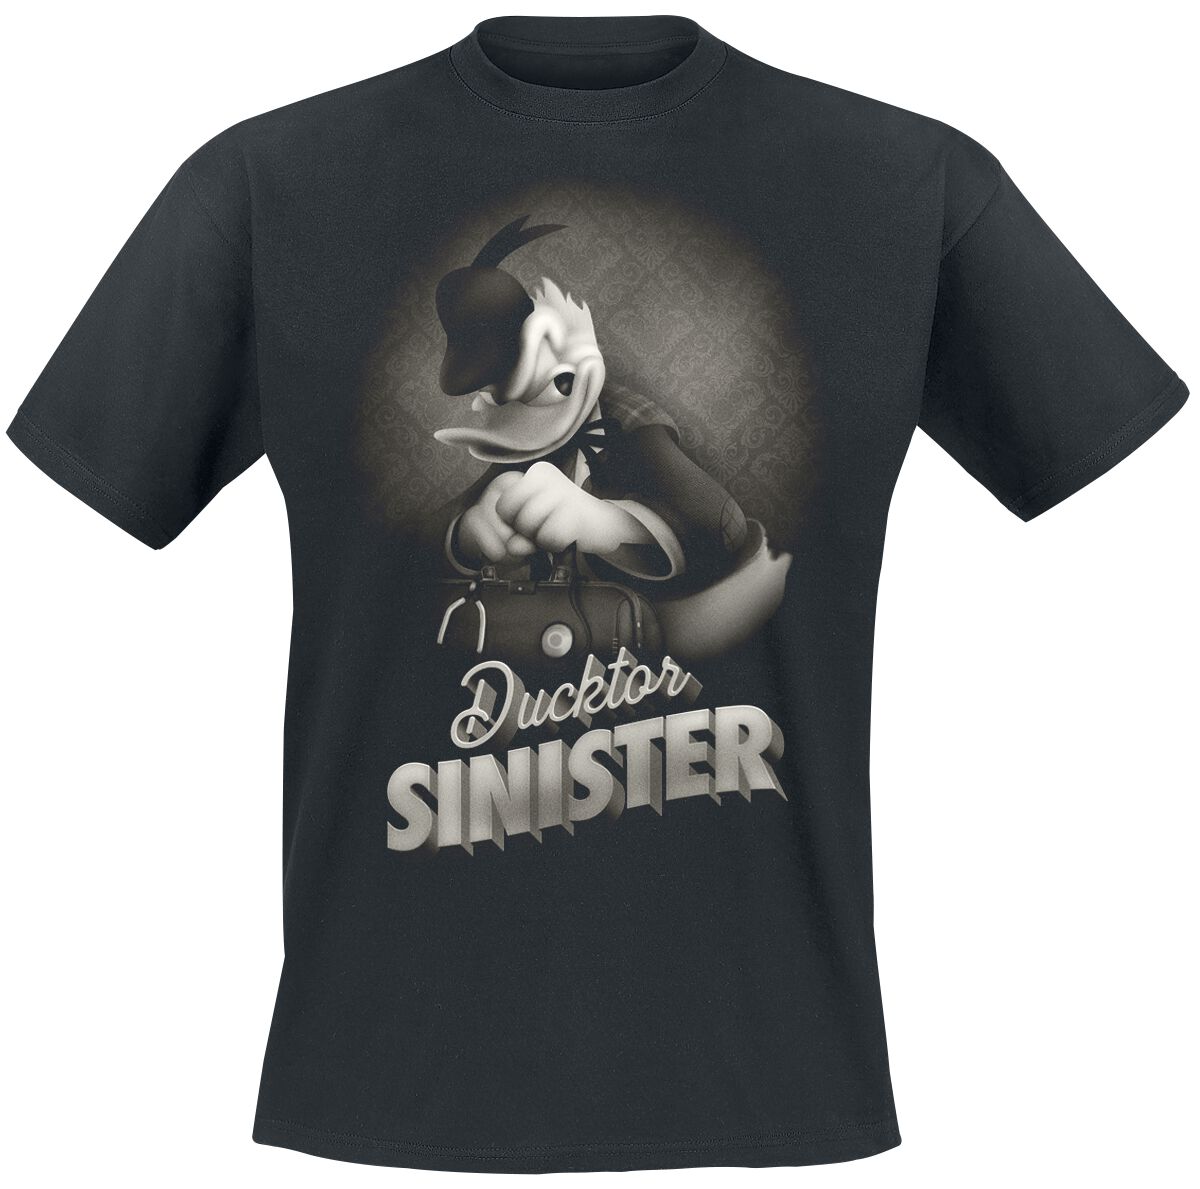 Image of T-Shirt Disney di Minnie & Topolino - Donald - Ducktor Sinister - S a XXL - Uomo - nero